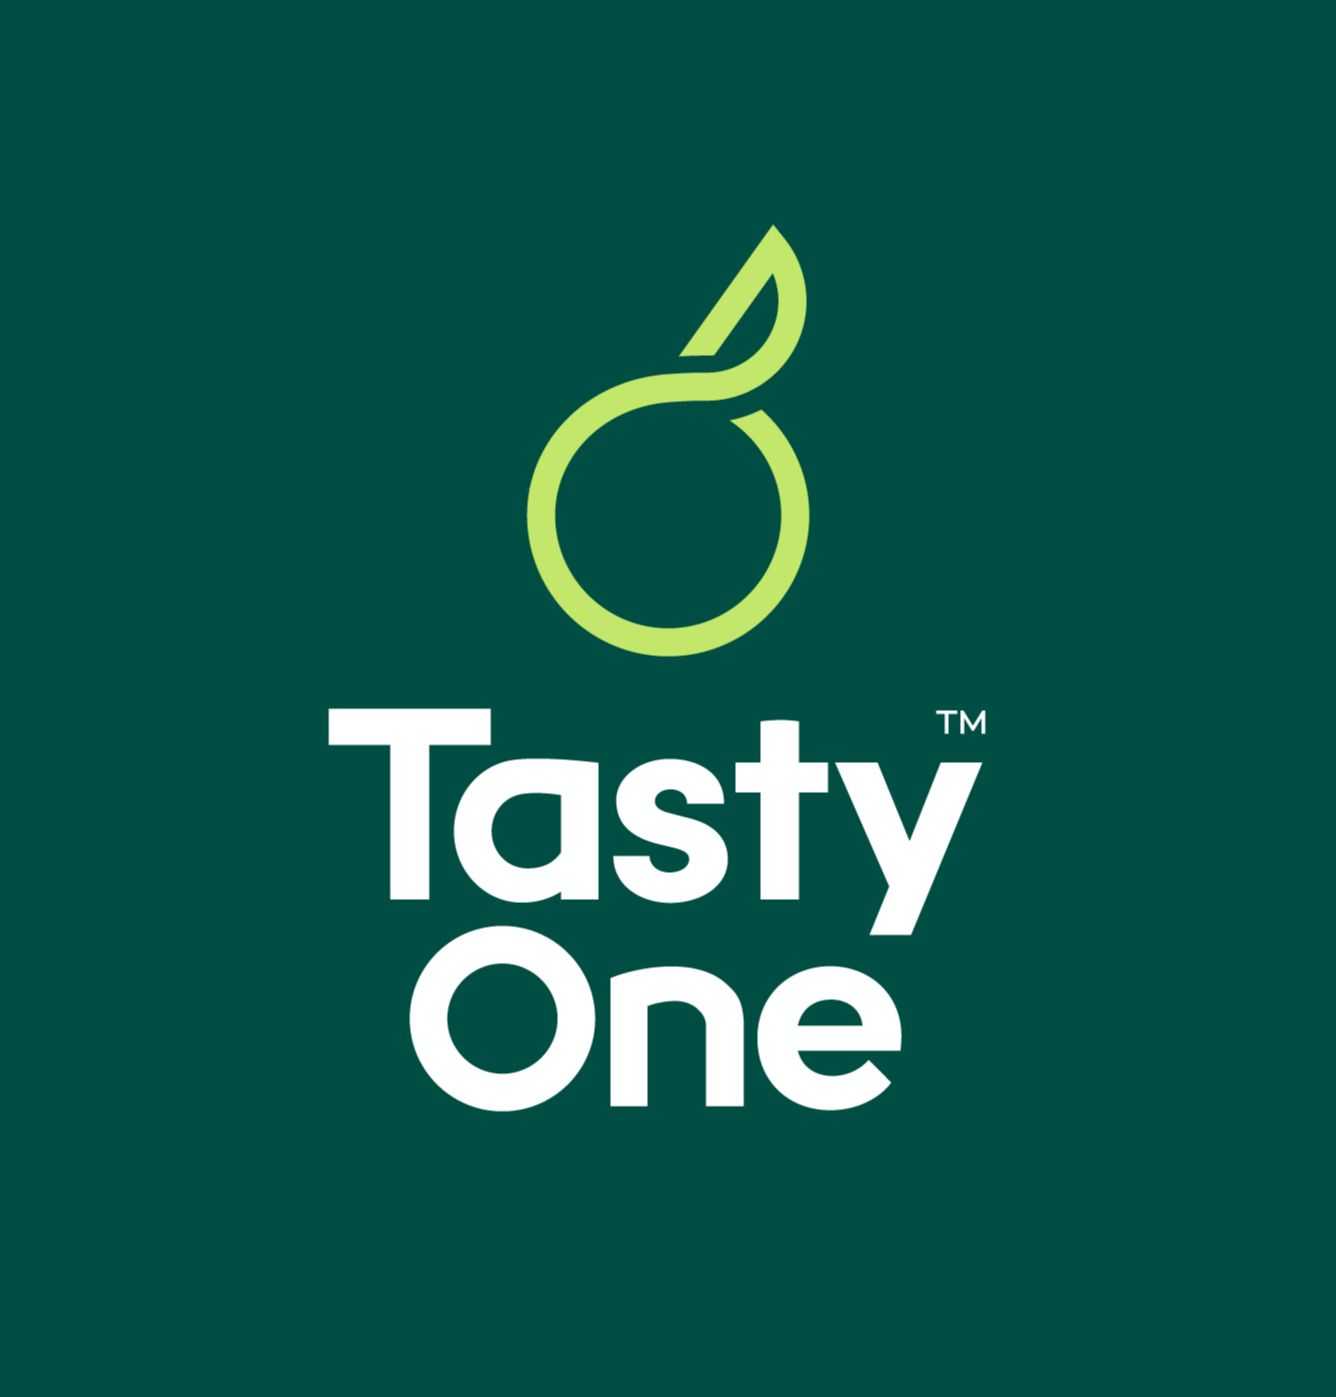 TastyChips re-brands as TastyOne.